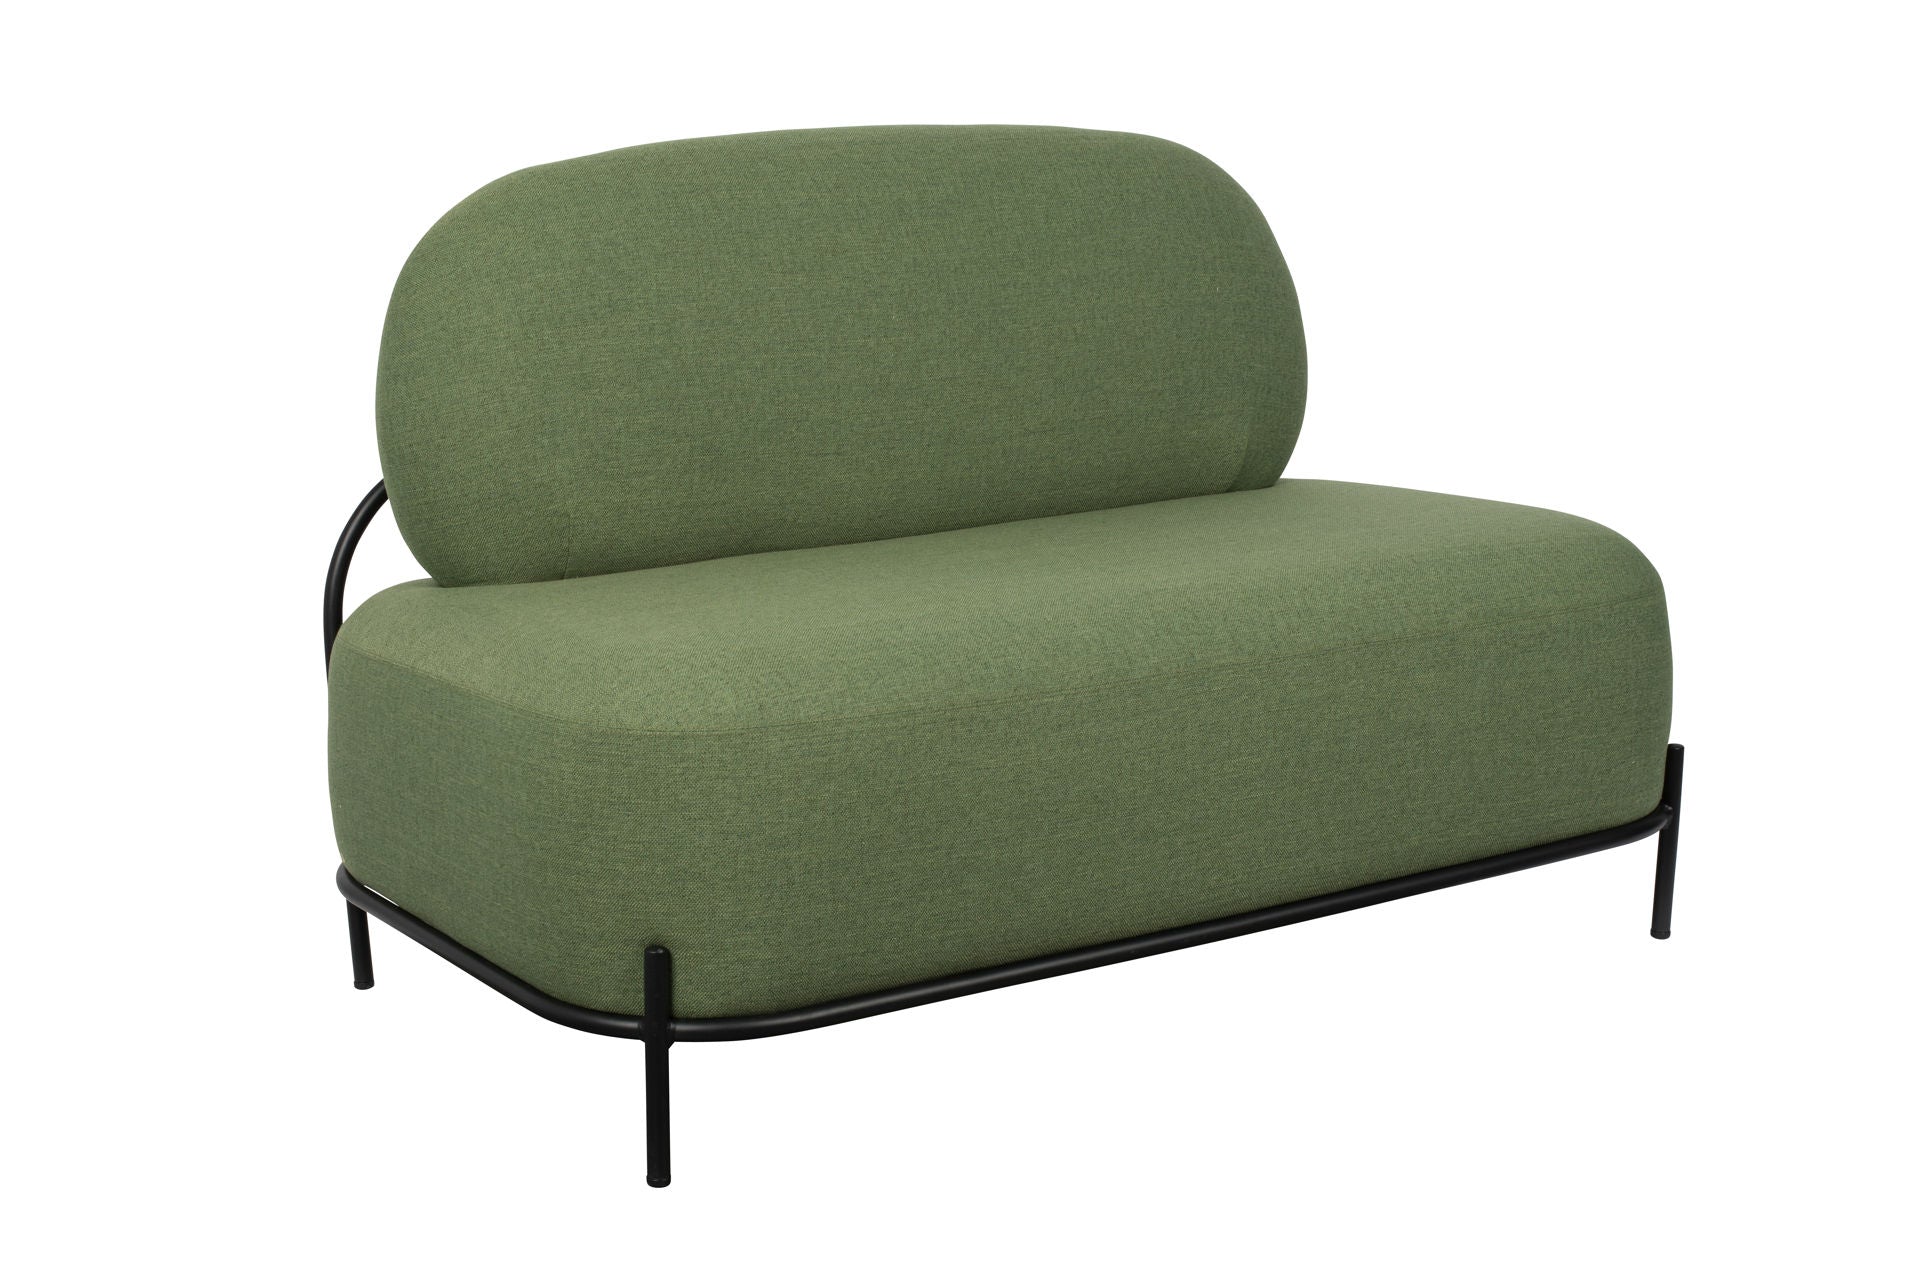 Nancy's Seven Hills Lounge Chair - Industriel - Vert - Polyester, Contreplaqué, Fer - 71,5 cm x 125 cm x 77 cm